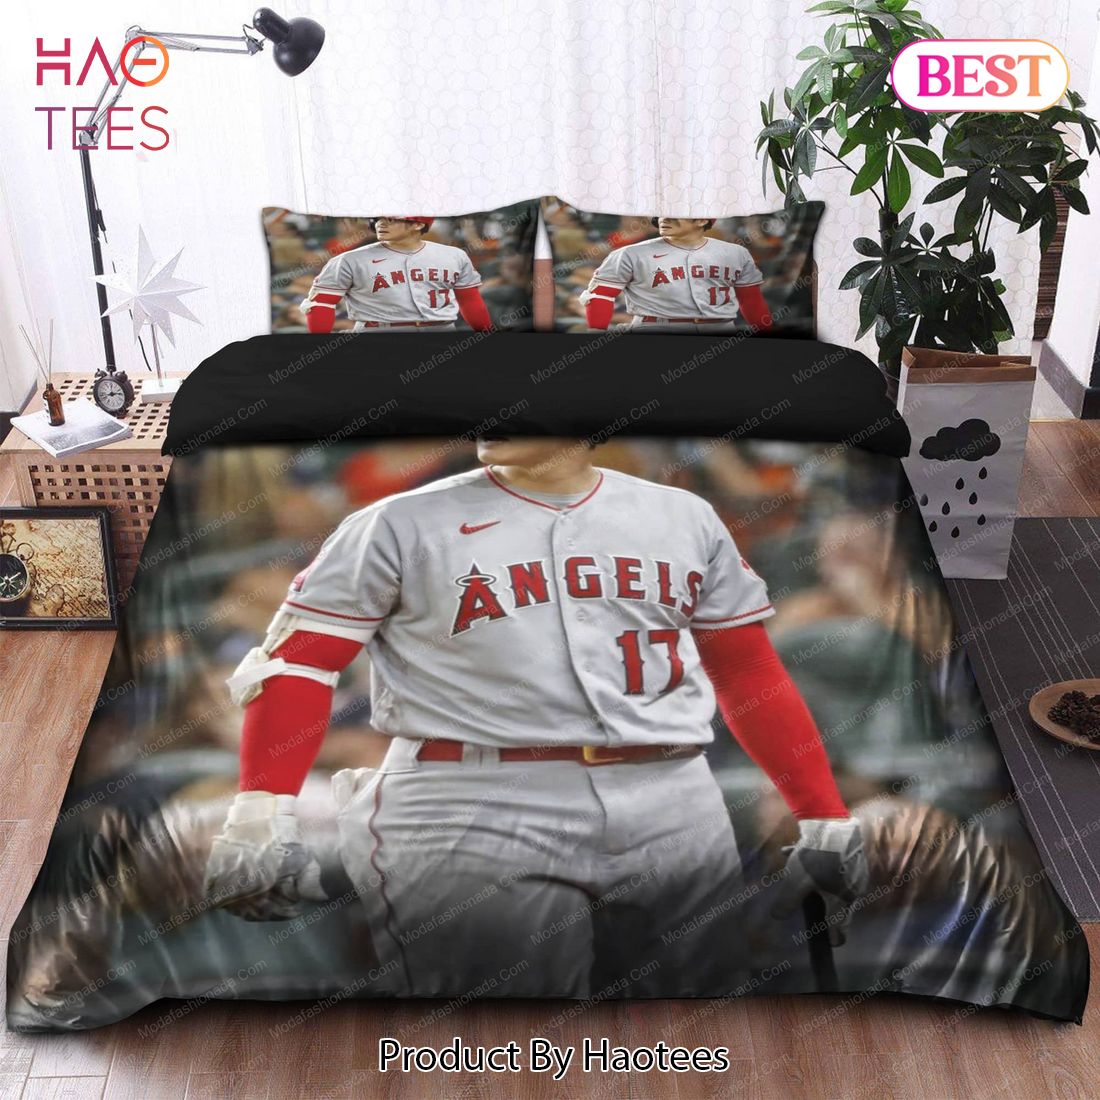 Buy Japanese Shohei Ohtani Los Angeles Angels MLB 28 Bedding Sets Bed Sets, Bedroom Sets, Comforter Sets, Duvet Cover, Bedspread